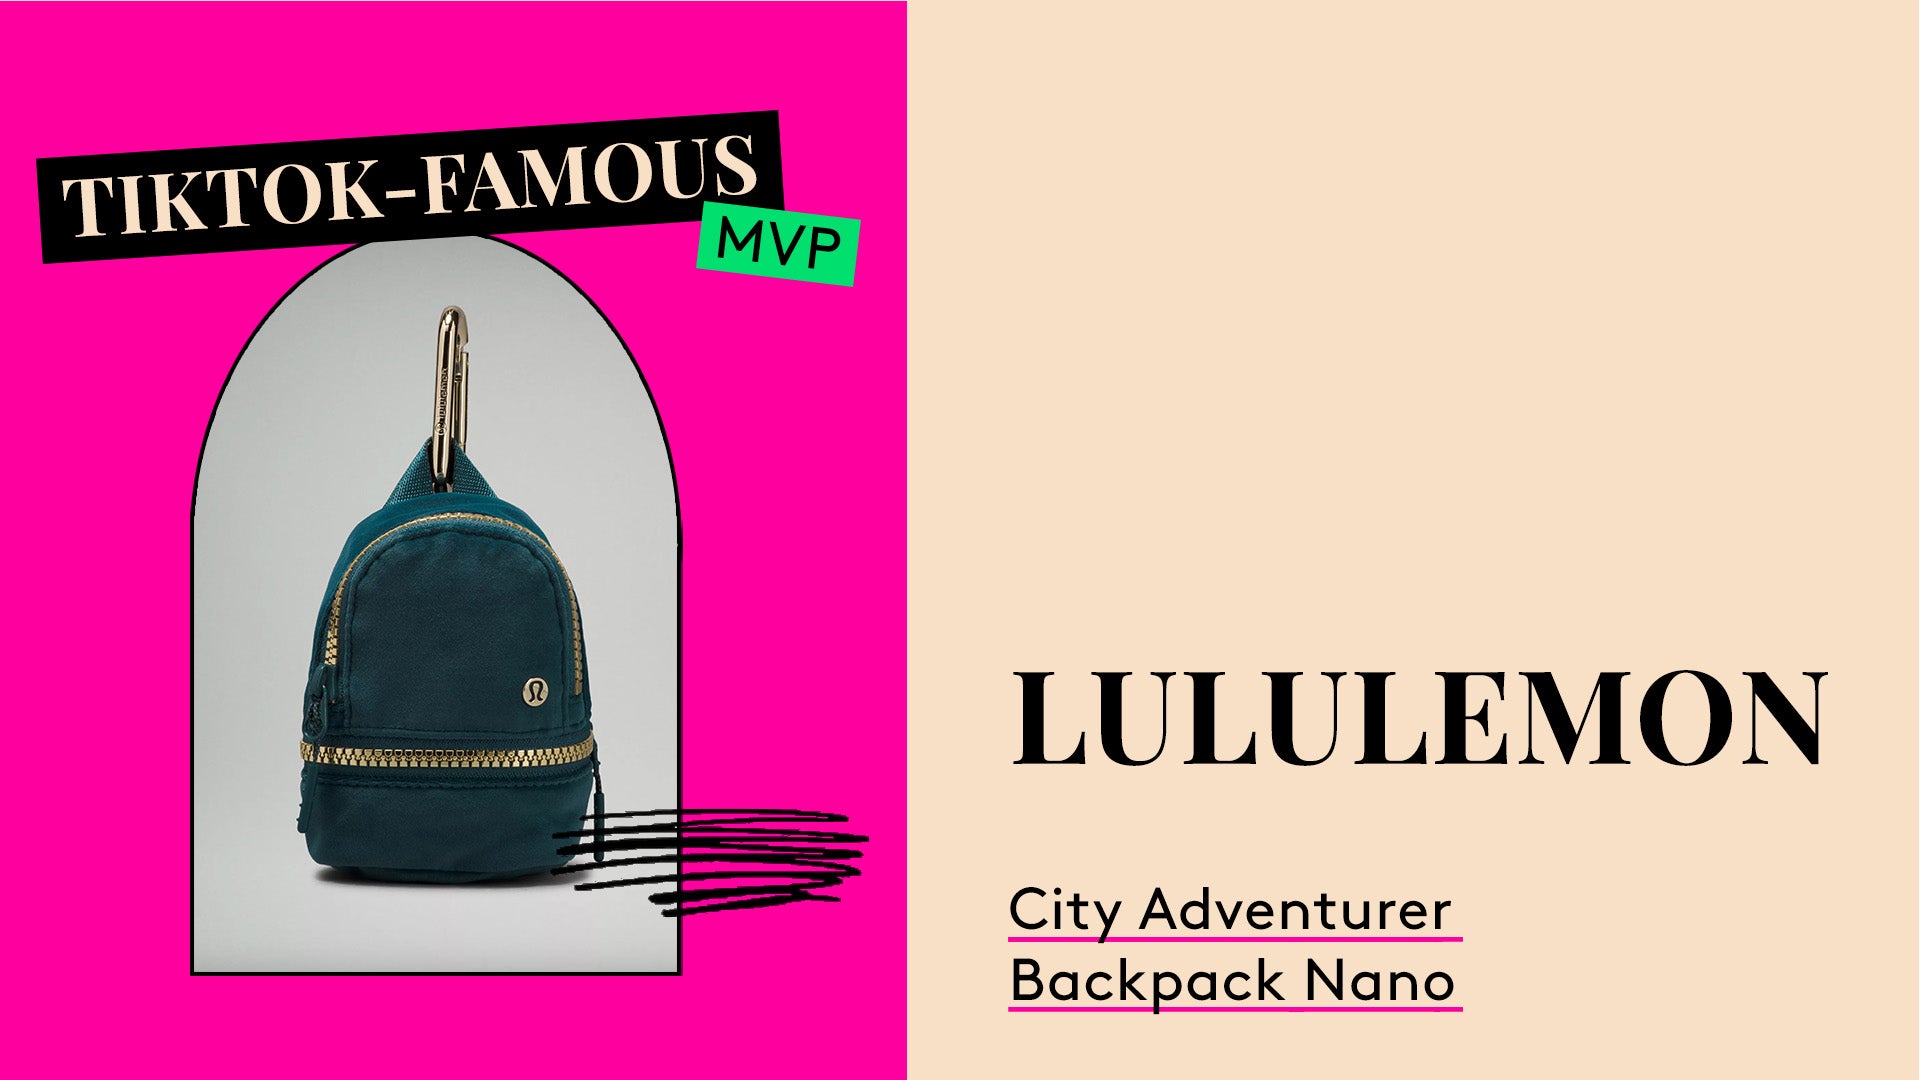 TikTok Famous Product MVP. Lululemon City Adventurer Backpack Nano.